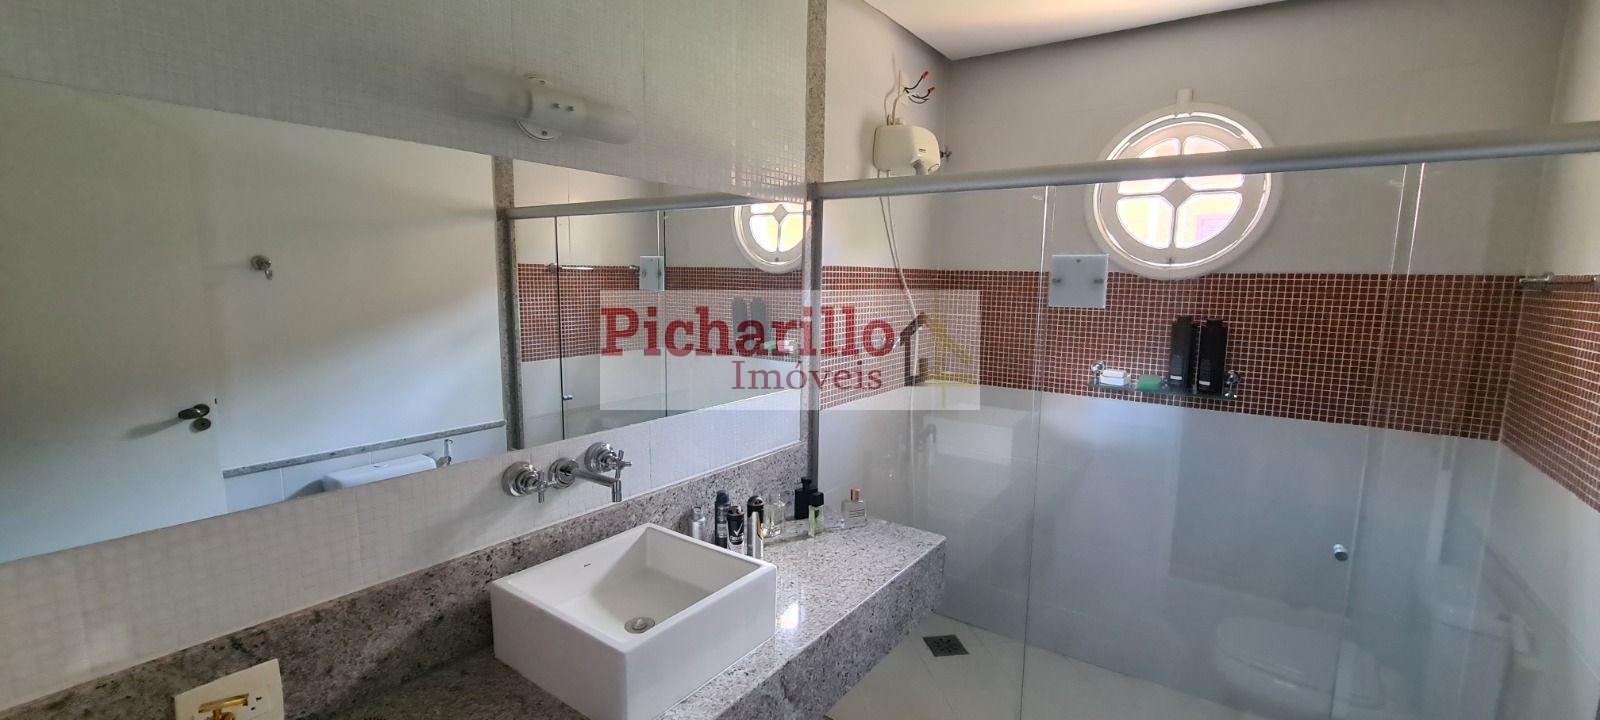 Casa com 4 dormitórios(2 suítes), piscina à venda, 351 m² - Vila Pinhal - Itirapina/SP